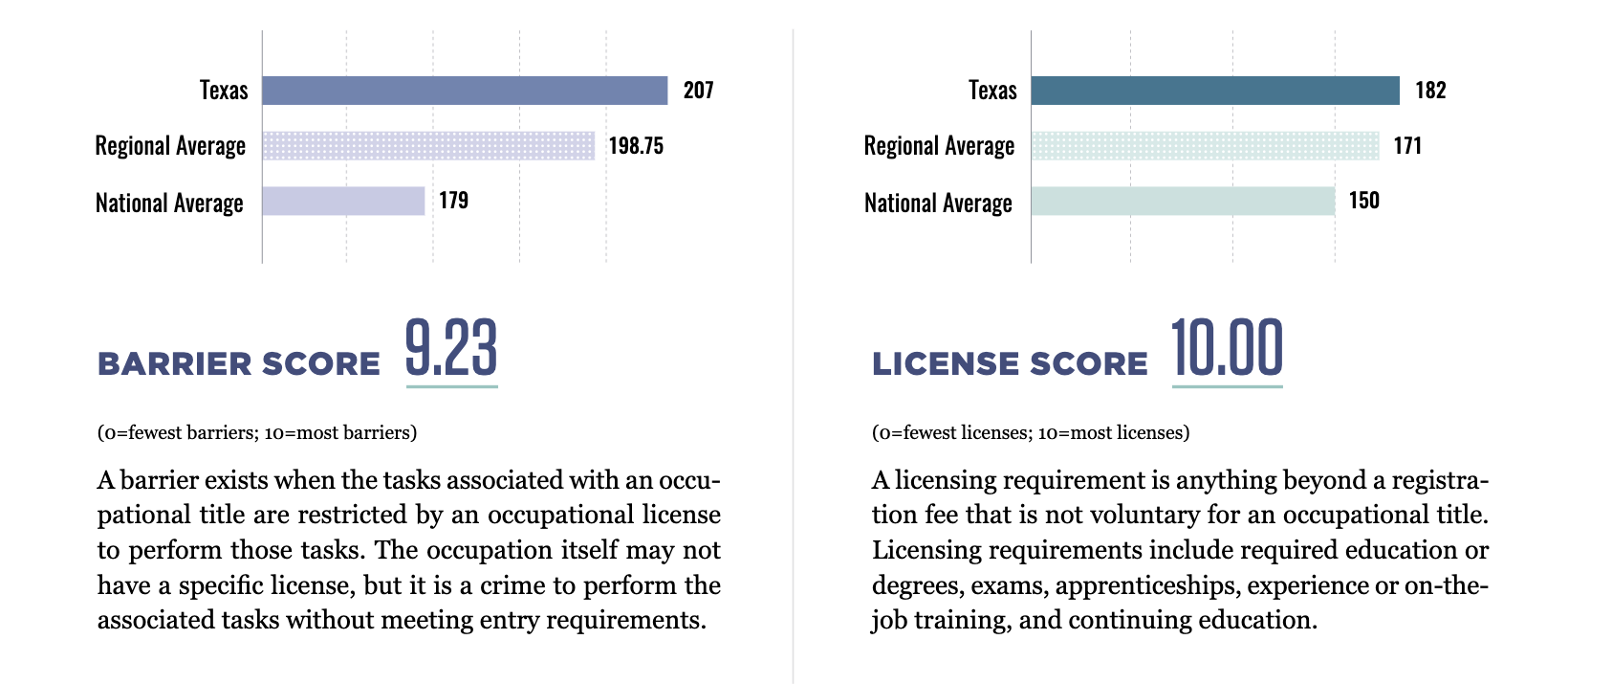 Texas' licensing burden